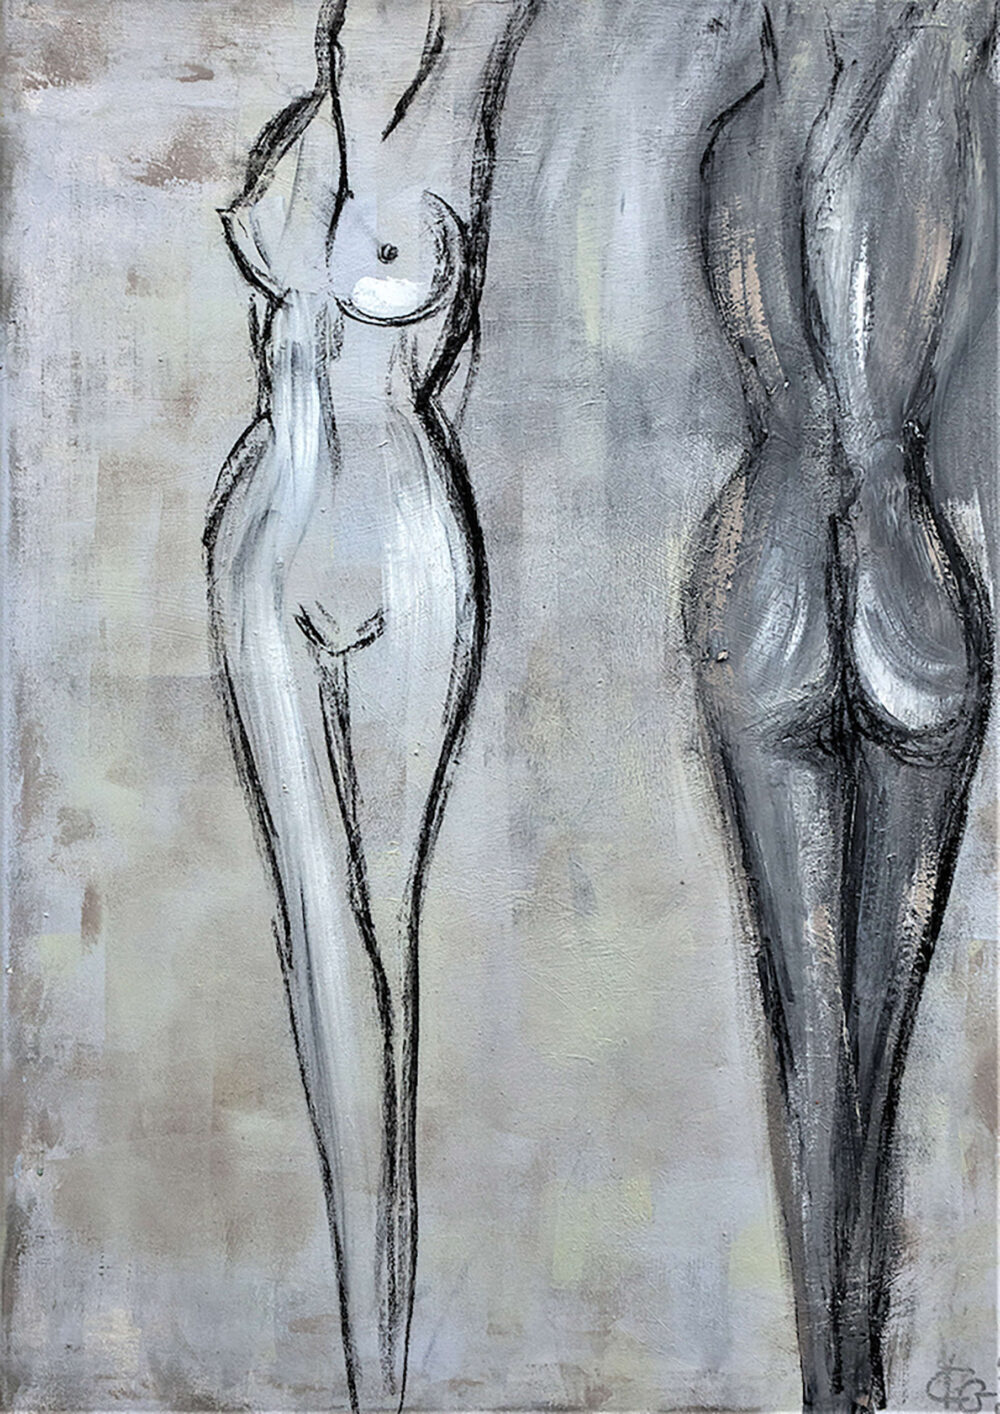 Das Gemälde Weiblicher Akt zeigt in Grautönen die nackten Körper zweier junger, sehr schlanker Frauen. Die linke von beiden ist von vorne, die andere von hinten zu sehen. Der Stil ist reduziert und modern.